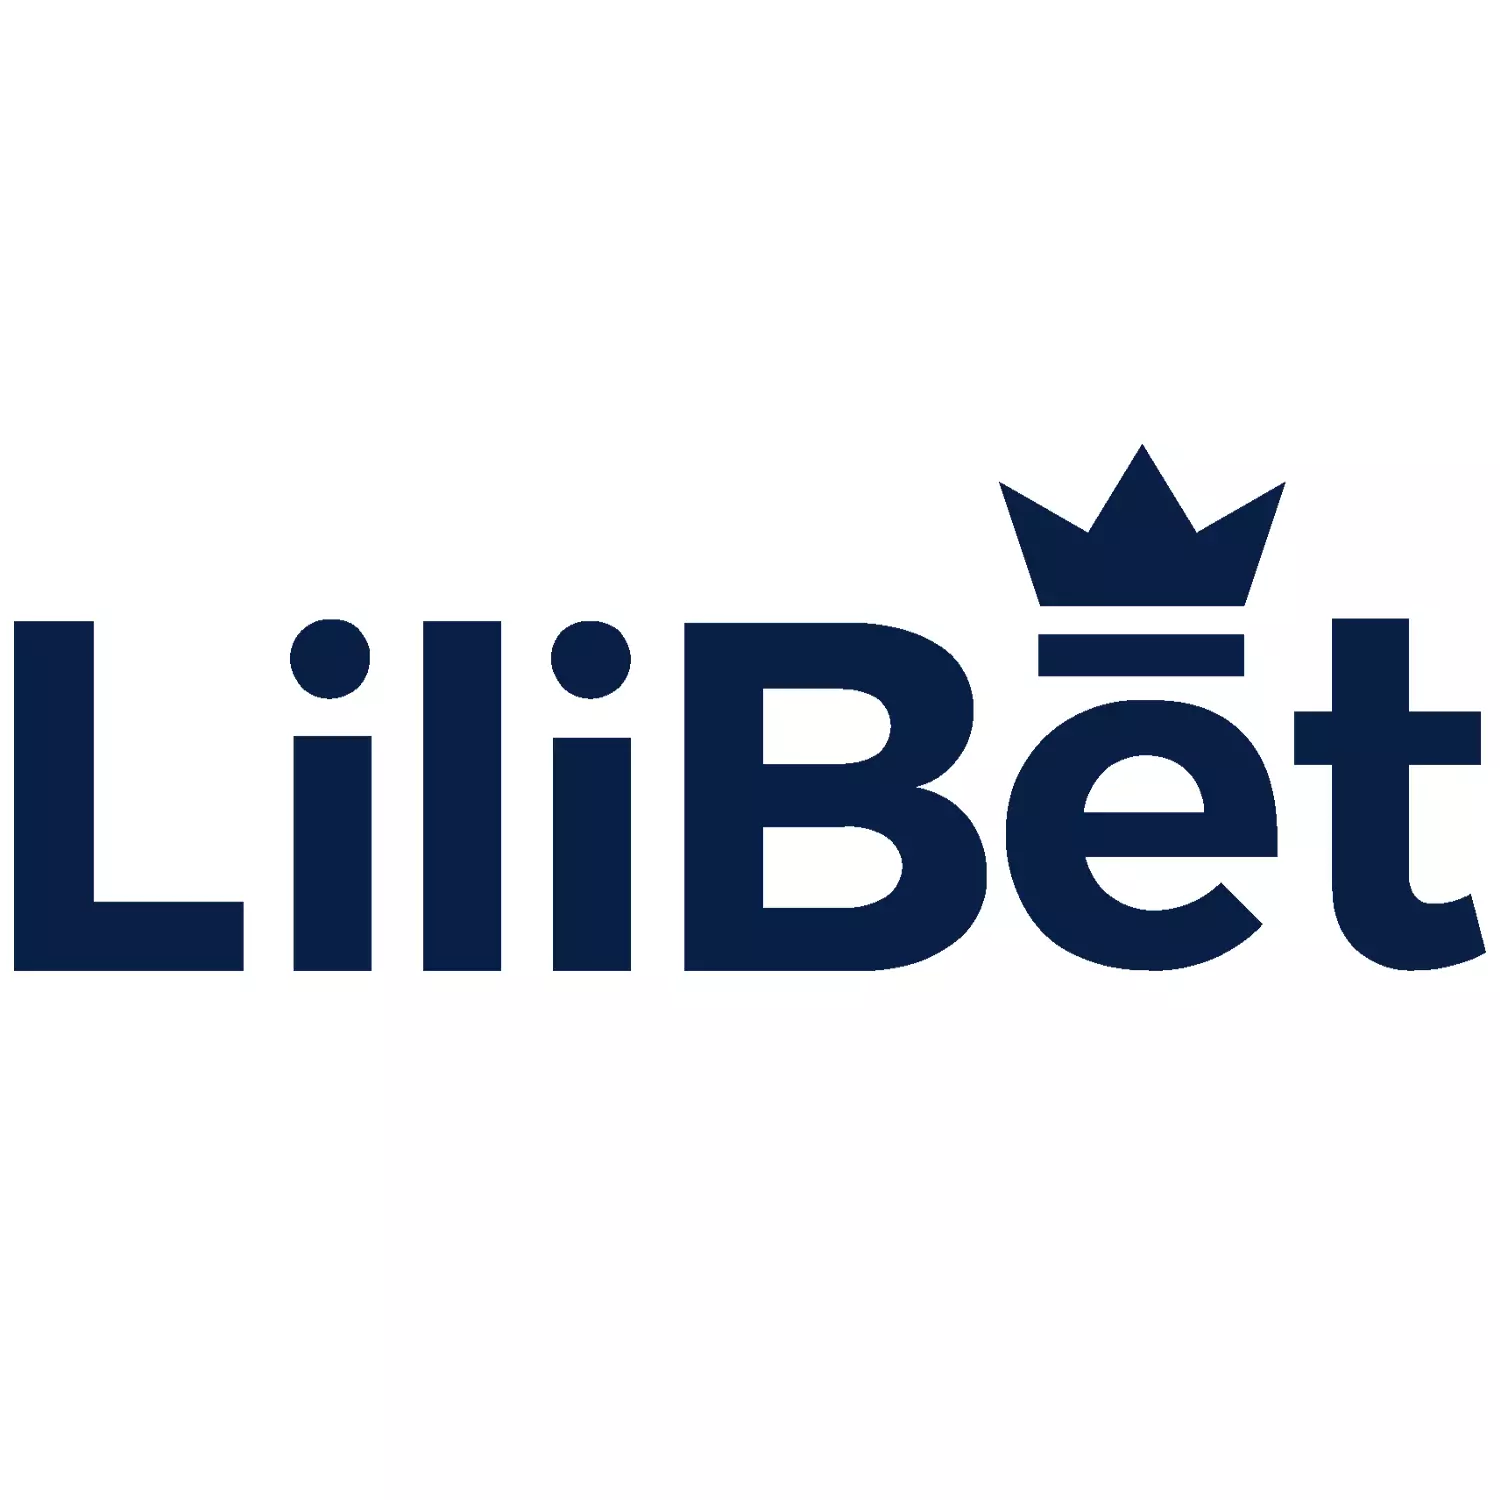 सट्टेबाजी और कैसीनो गेम खेलने के लिए Lilibet साइट के अवसरों के बारे में पढ़ें।